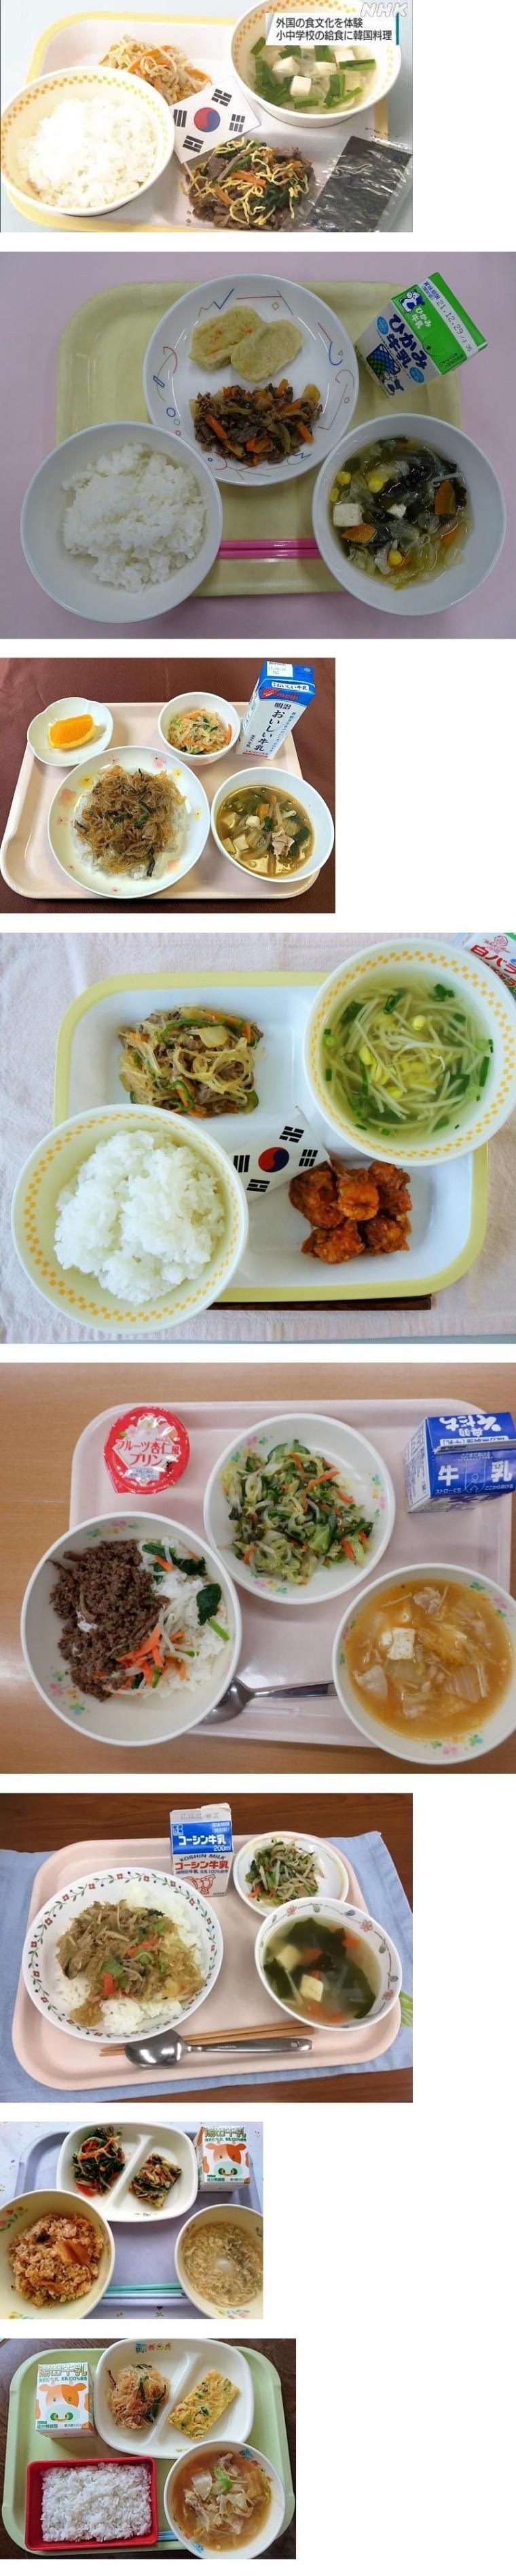 일본 초등학교에 제공되었다는 한국음식.jpg